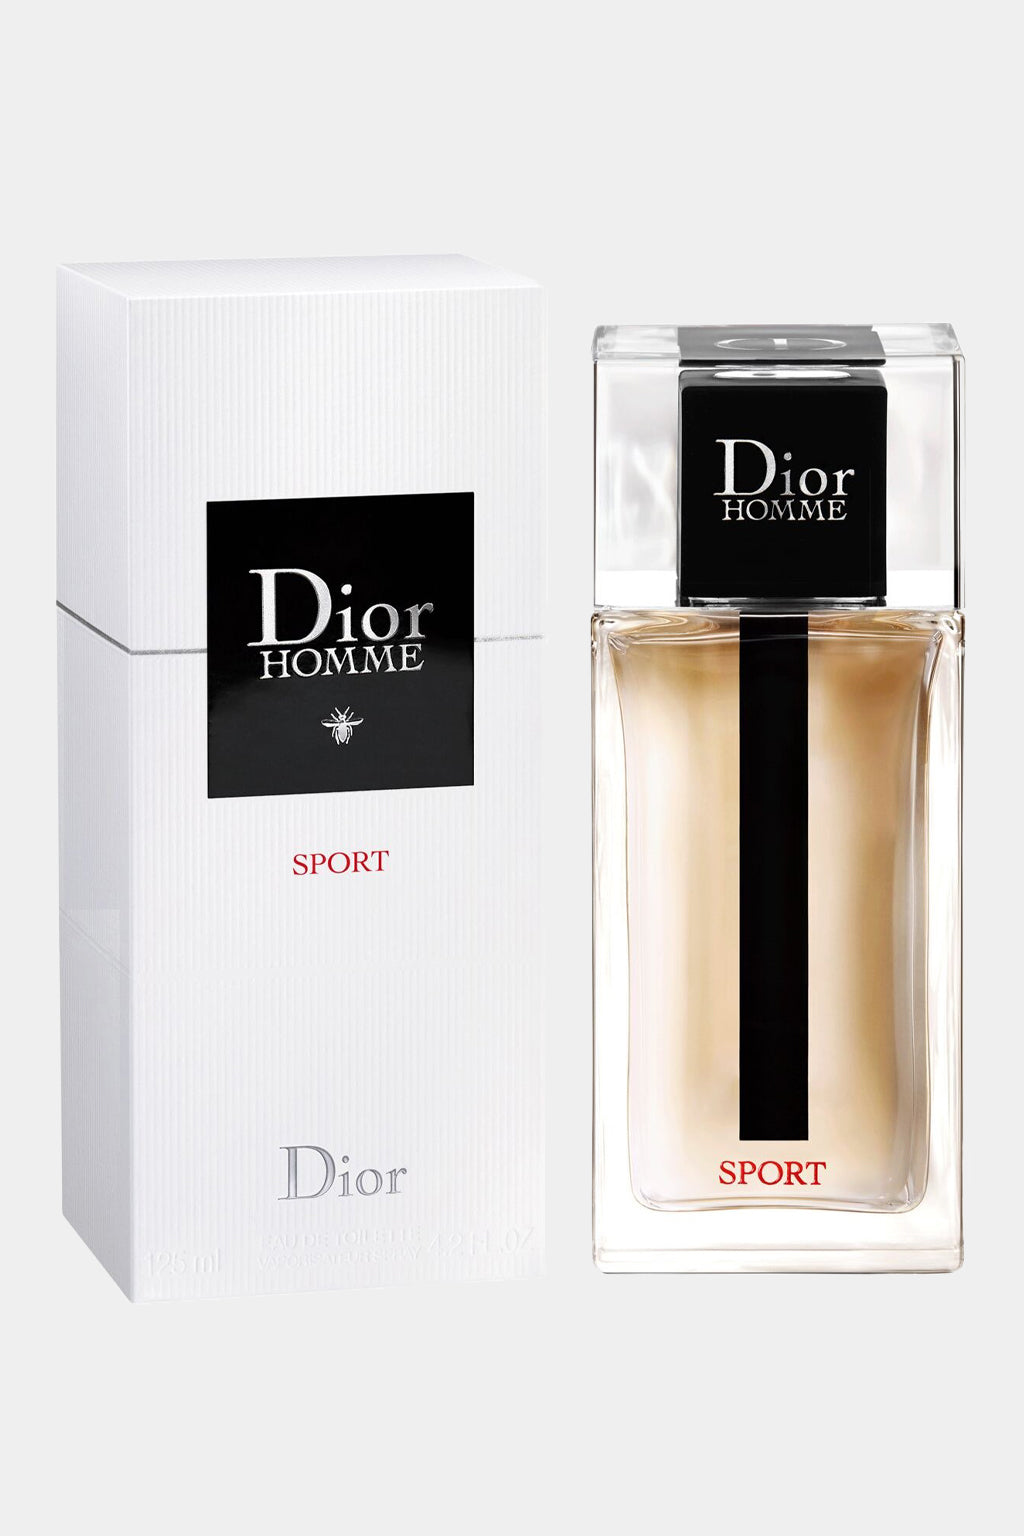 Christian Dior - Homme Sport Eau de Toilette